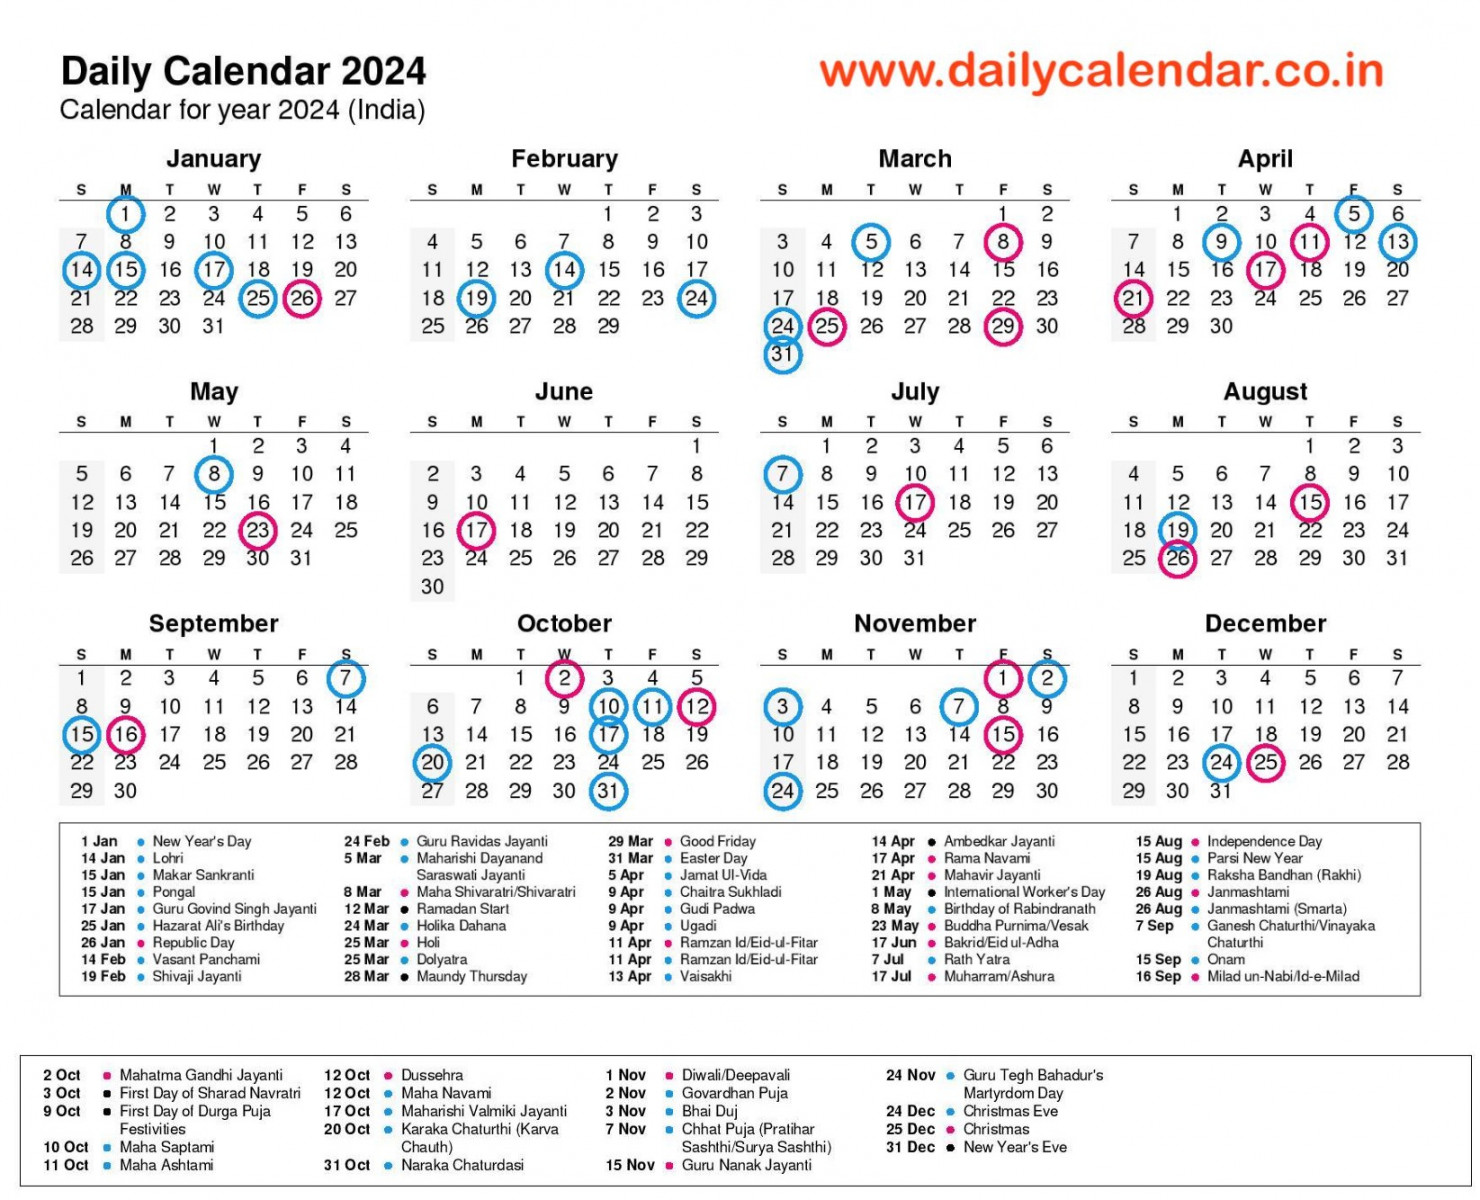 Daily Calendar  with Holidays (Govt, Tamil, Telugu, Odia) Pdf